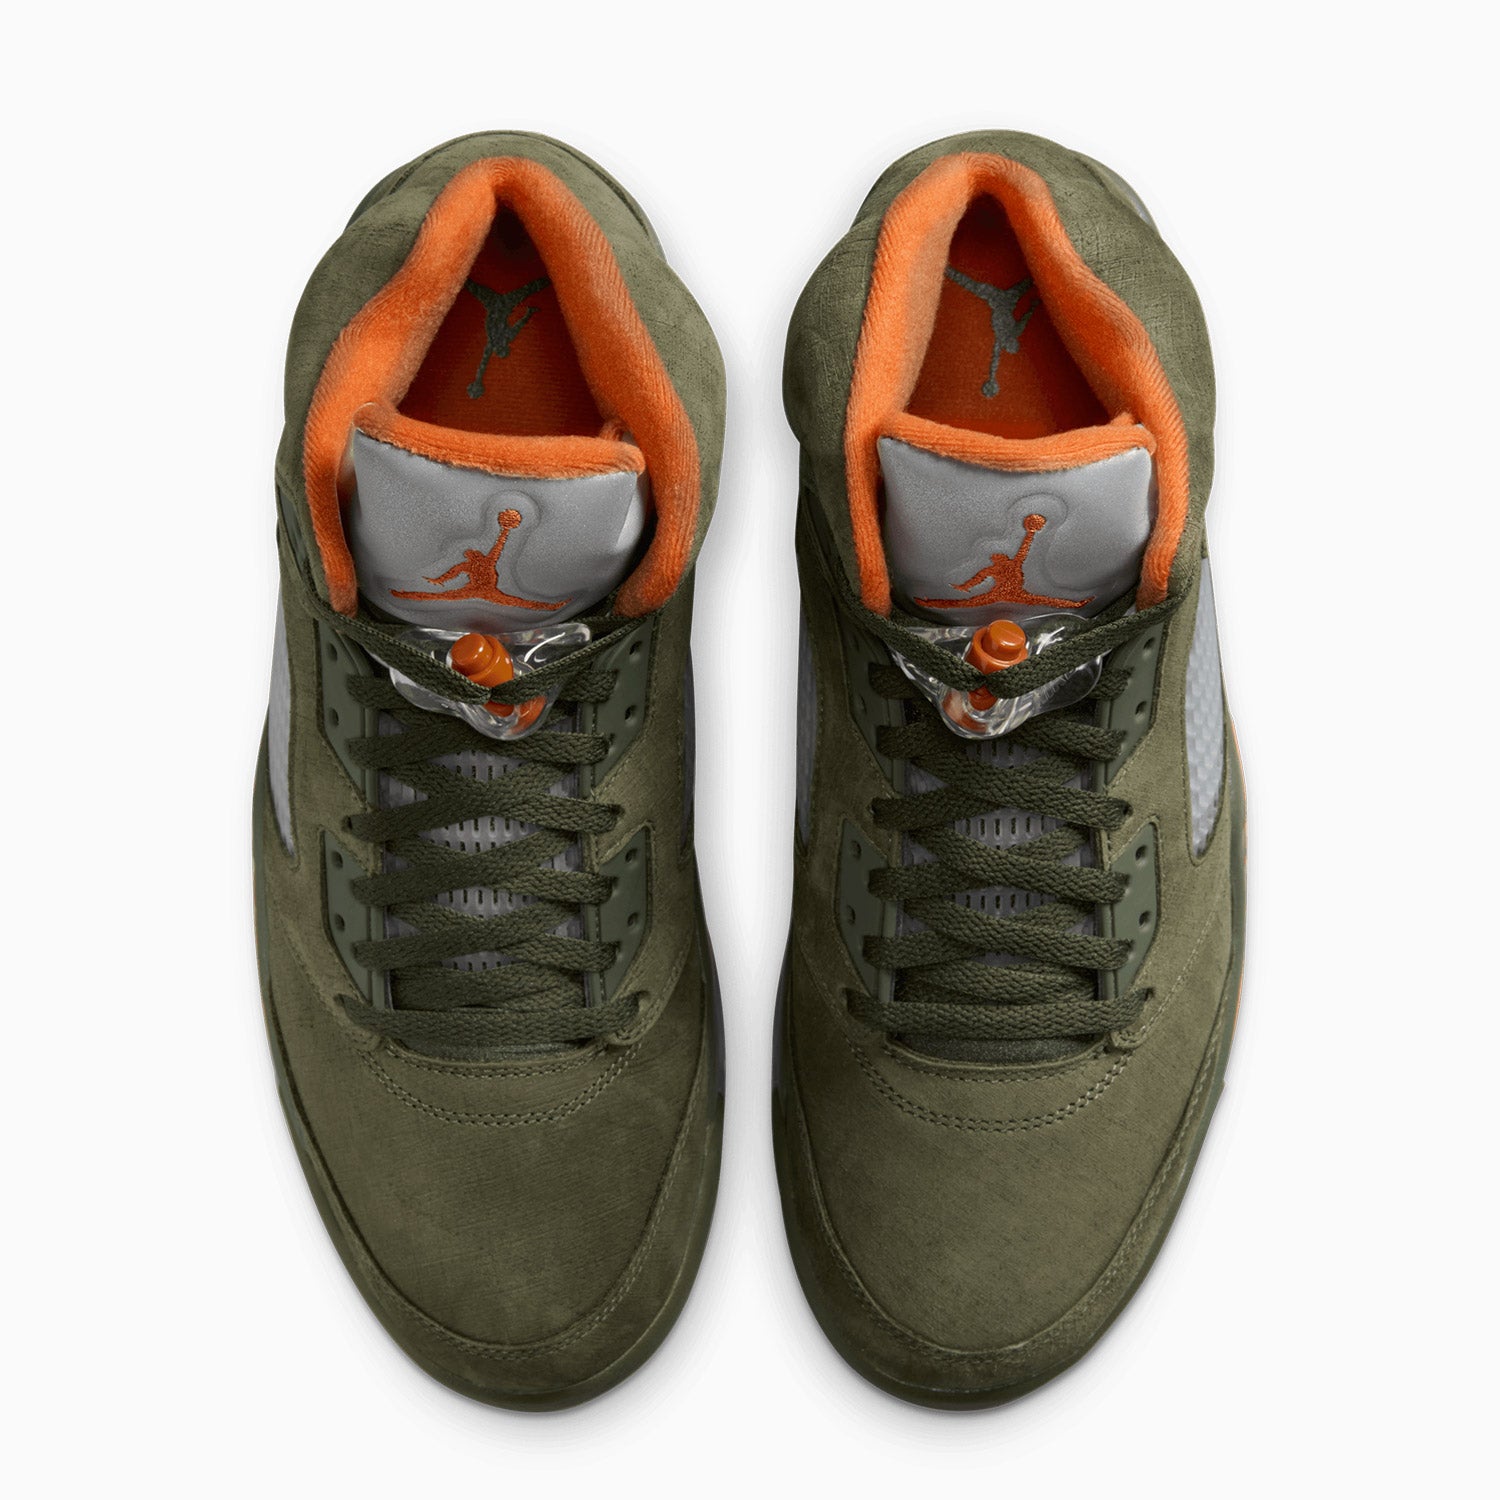 mens-air-jordan-5-retro-olive-shoes-dd0587-308